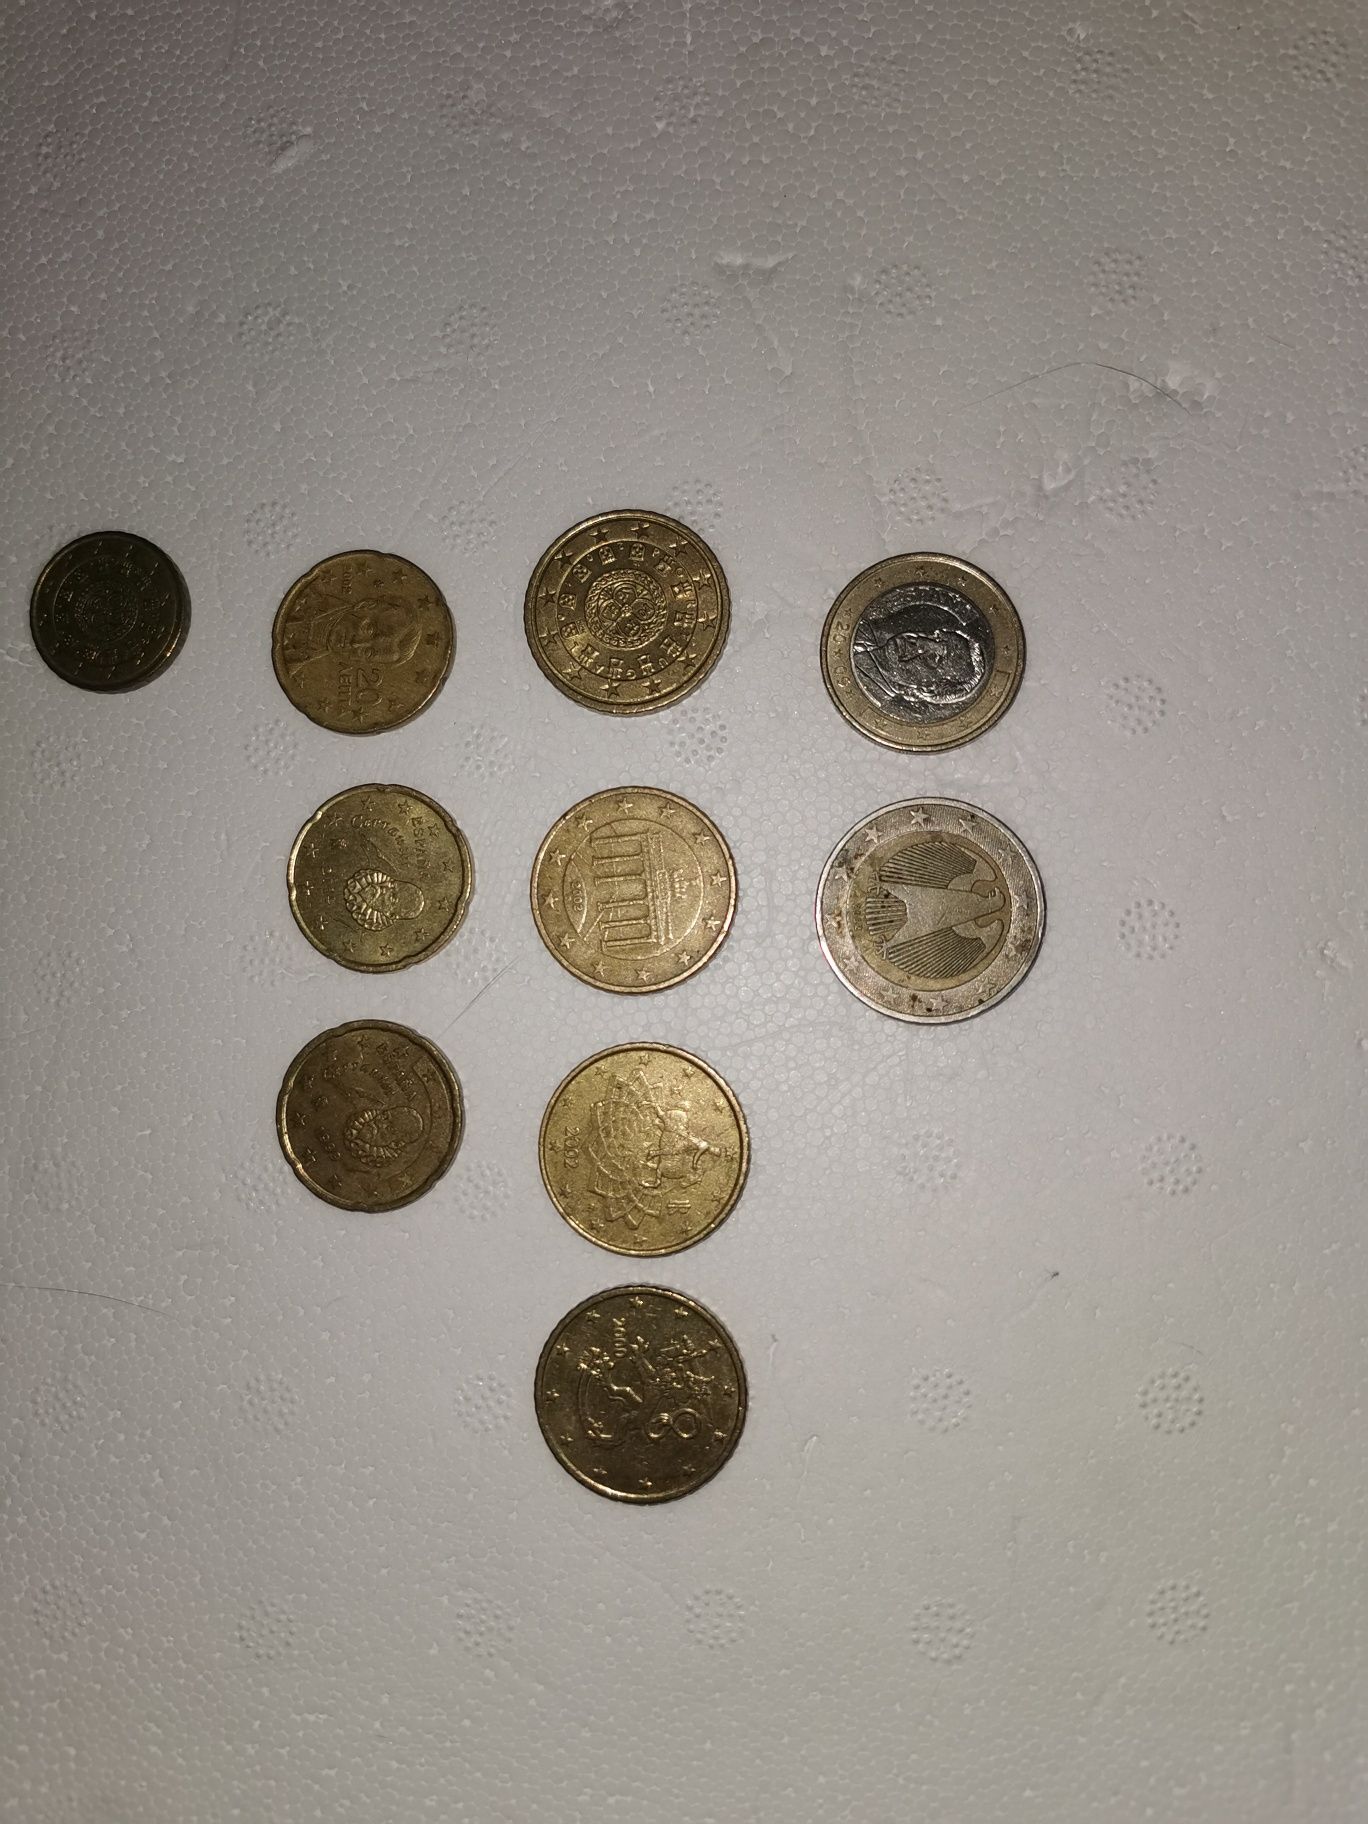 Vand monede rare  1 eur/2 eur/50 cent/20 cent/10 cent.